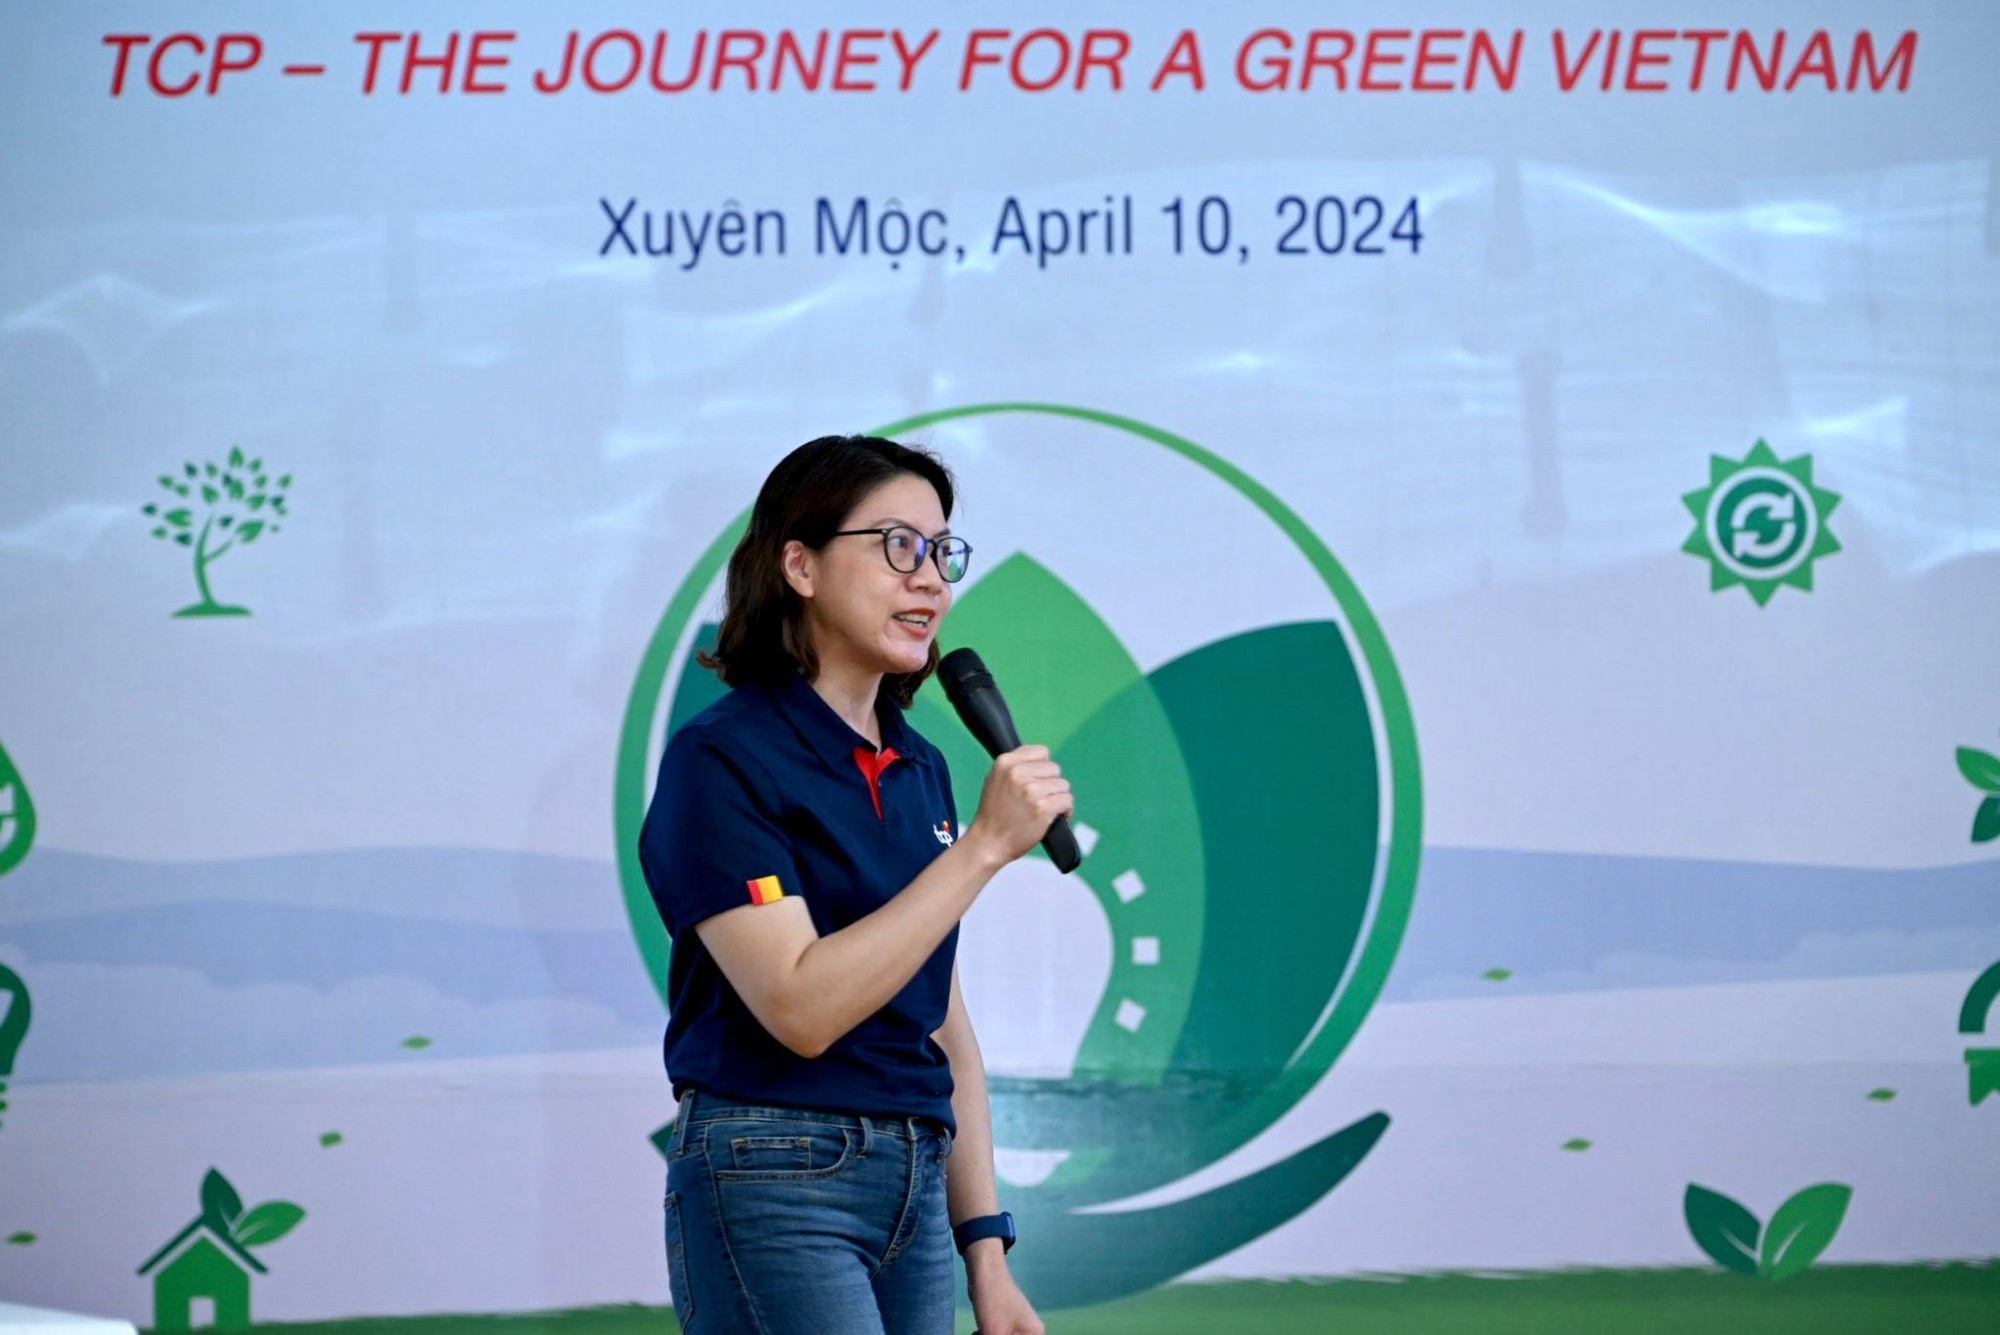 2.700 cây lim được trồng tại tỉnh Bà Rịa Vũng Tàu cho Việt Nam thêm xanh- Ảnh 3.